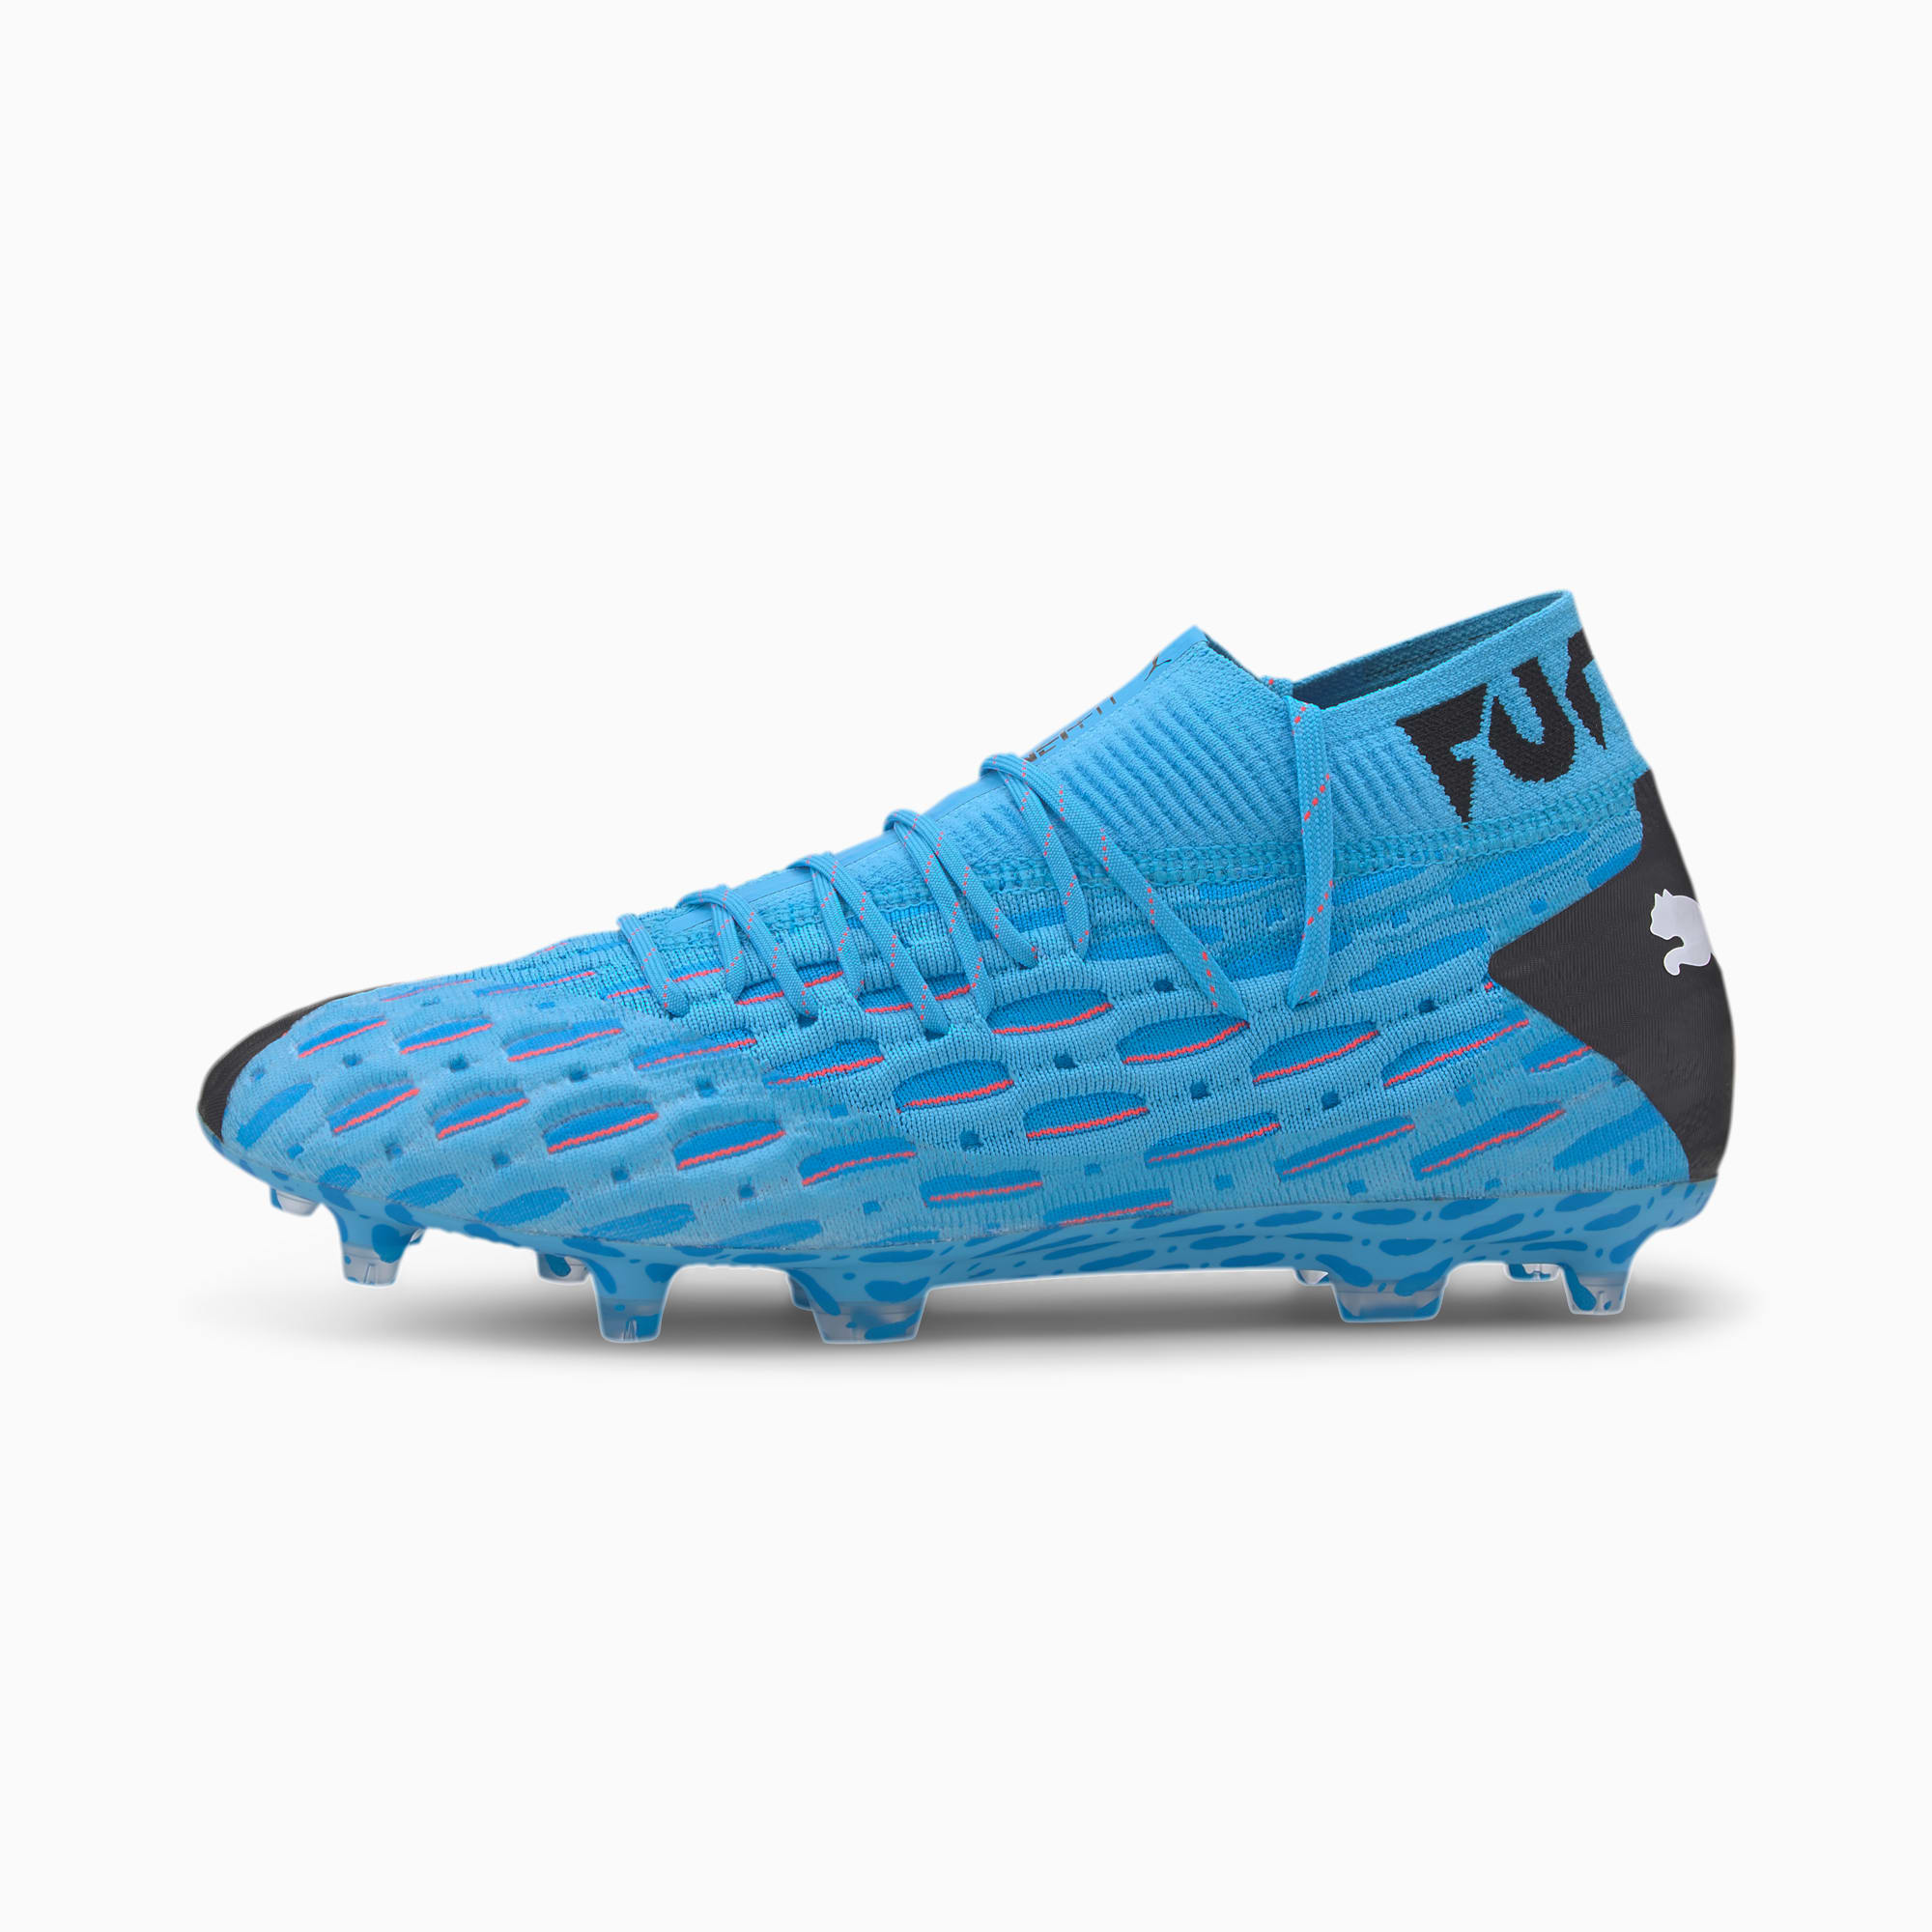 puma new football boots